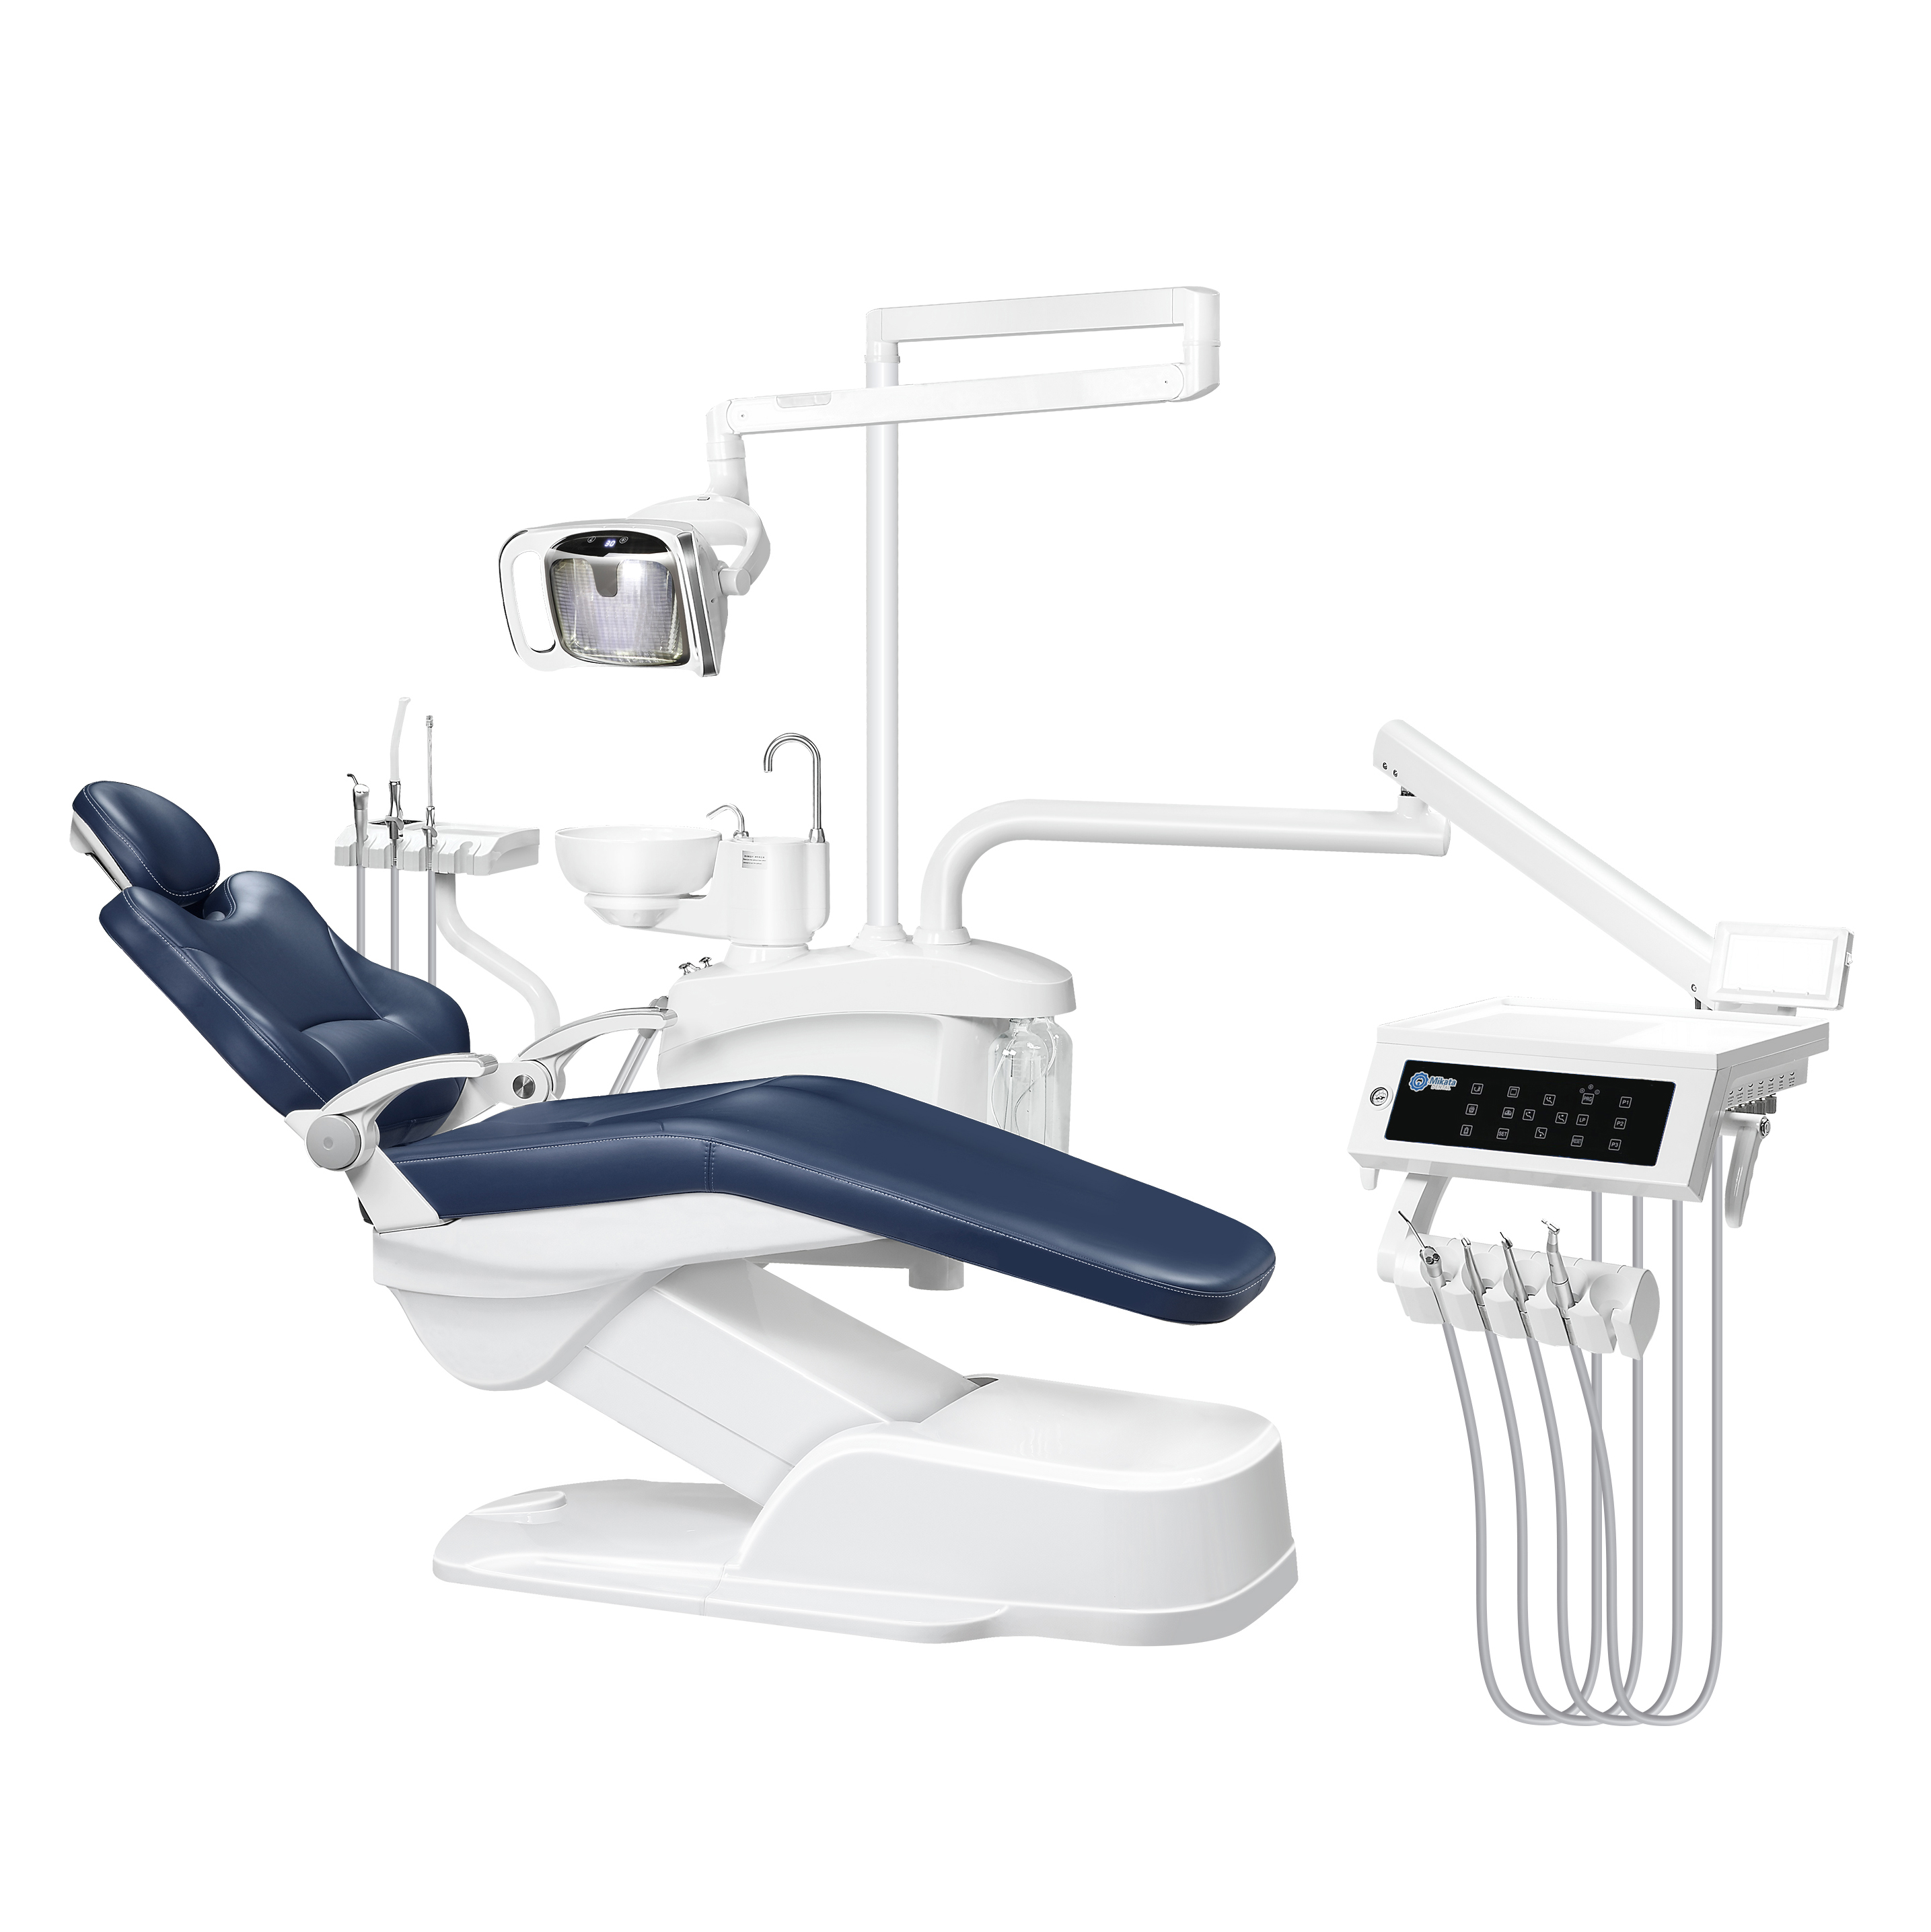 Sillón dental, Unidad dental, Unidad de sillón dental de China, equipo dentalSil